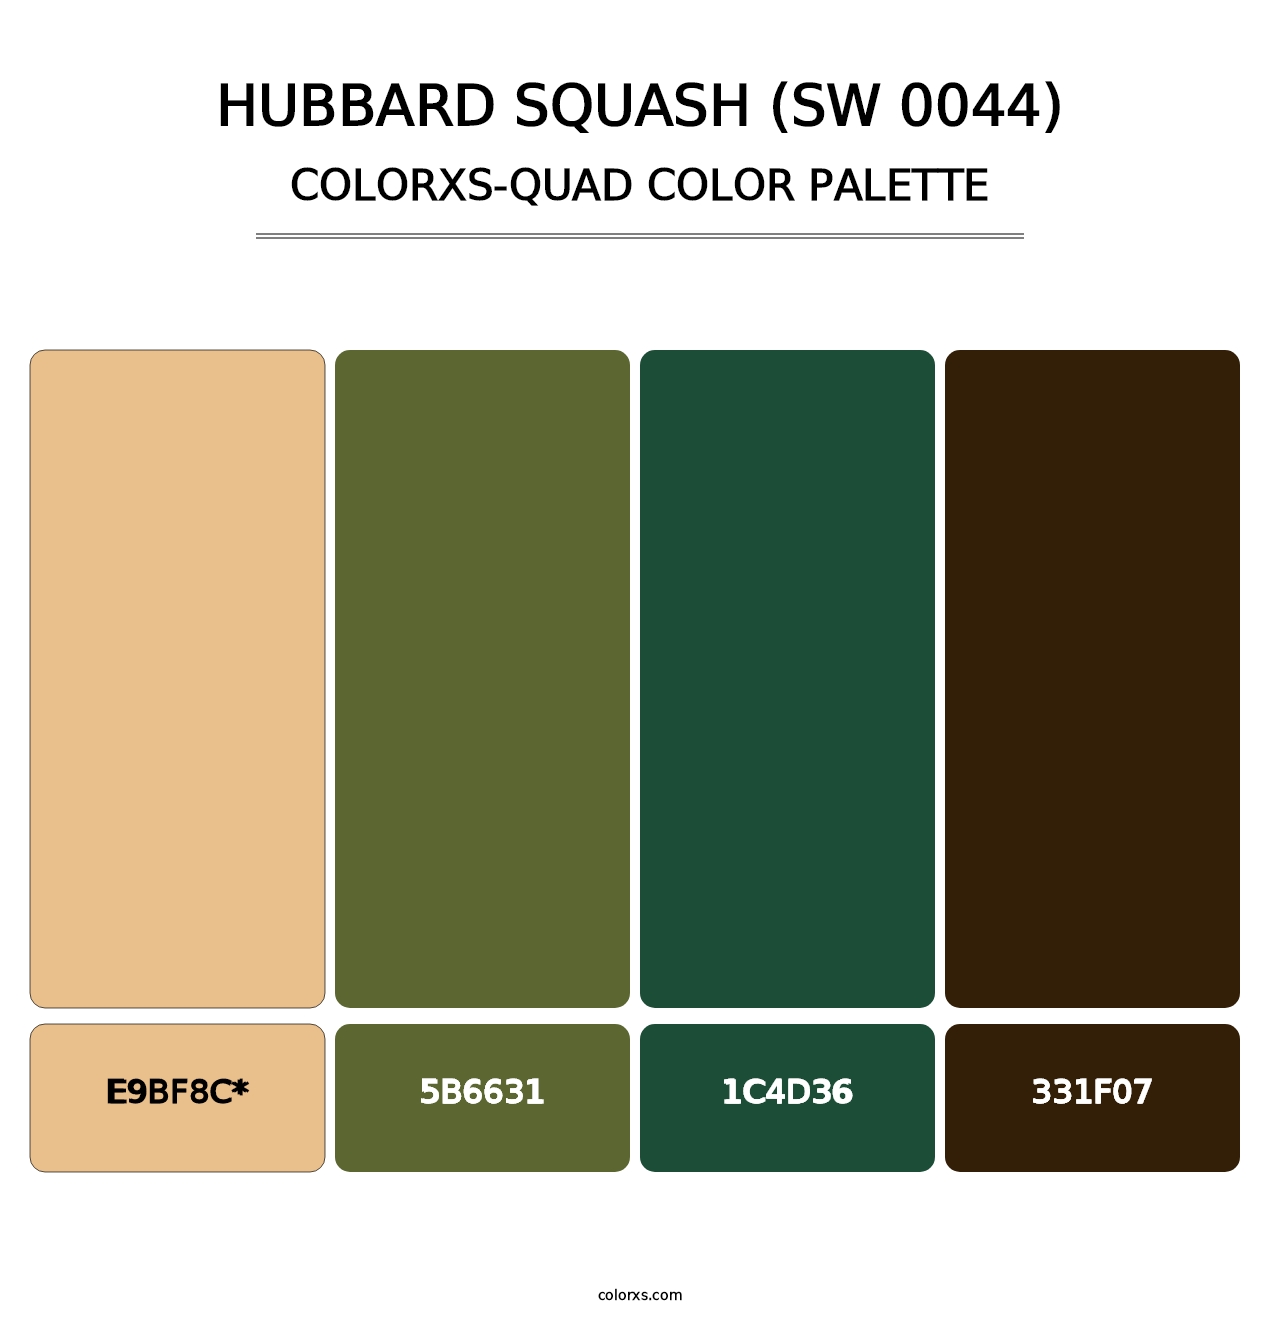 Hubbard Squash (SW 0044) - Colorxs Quad Palette